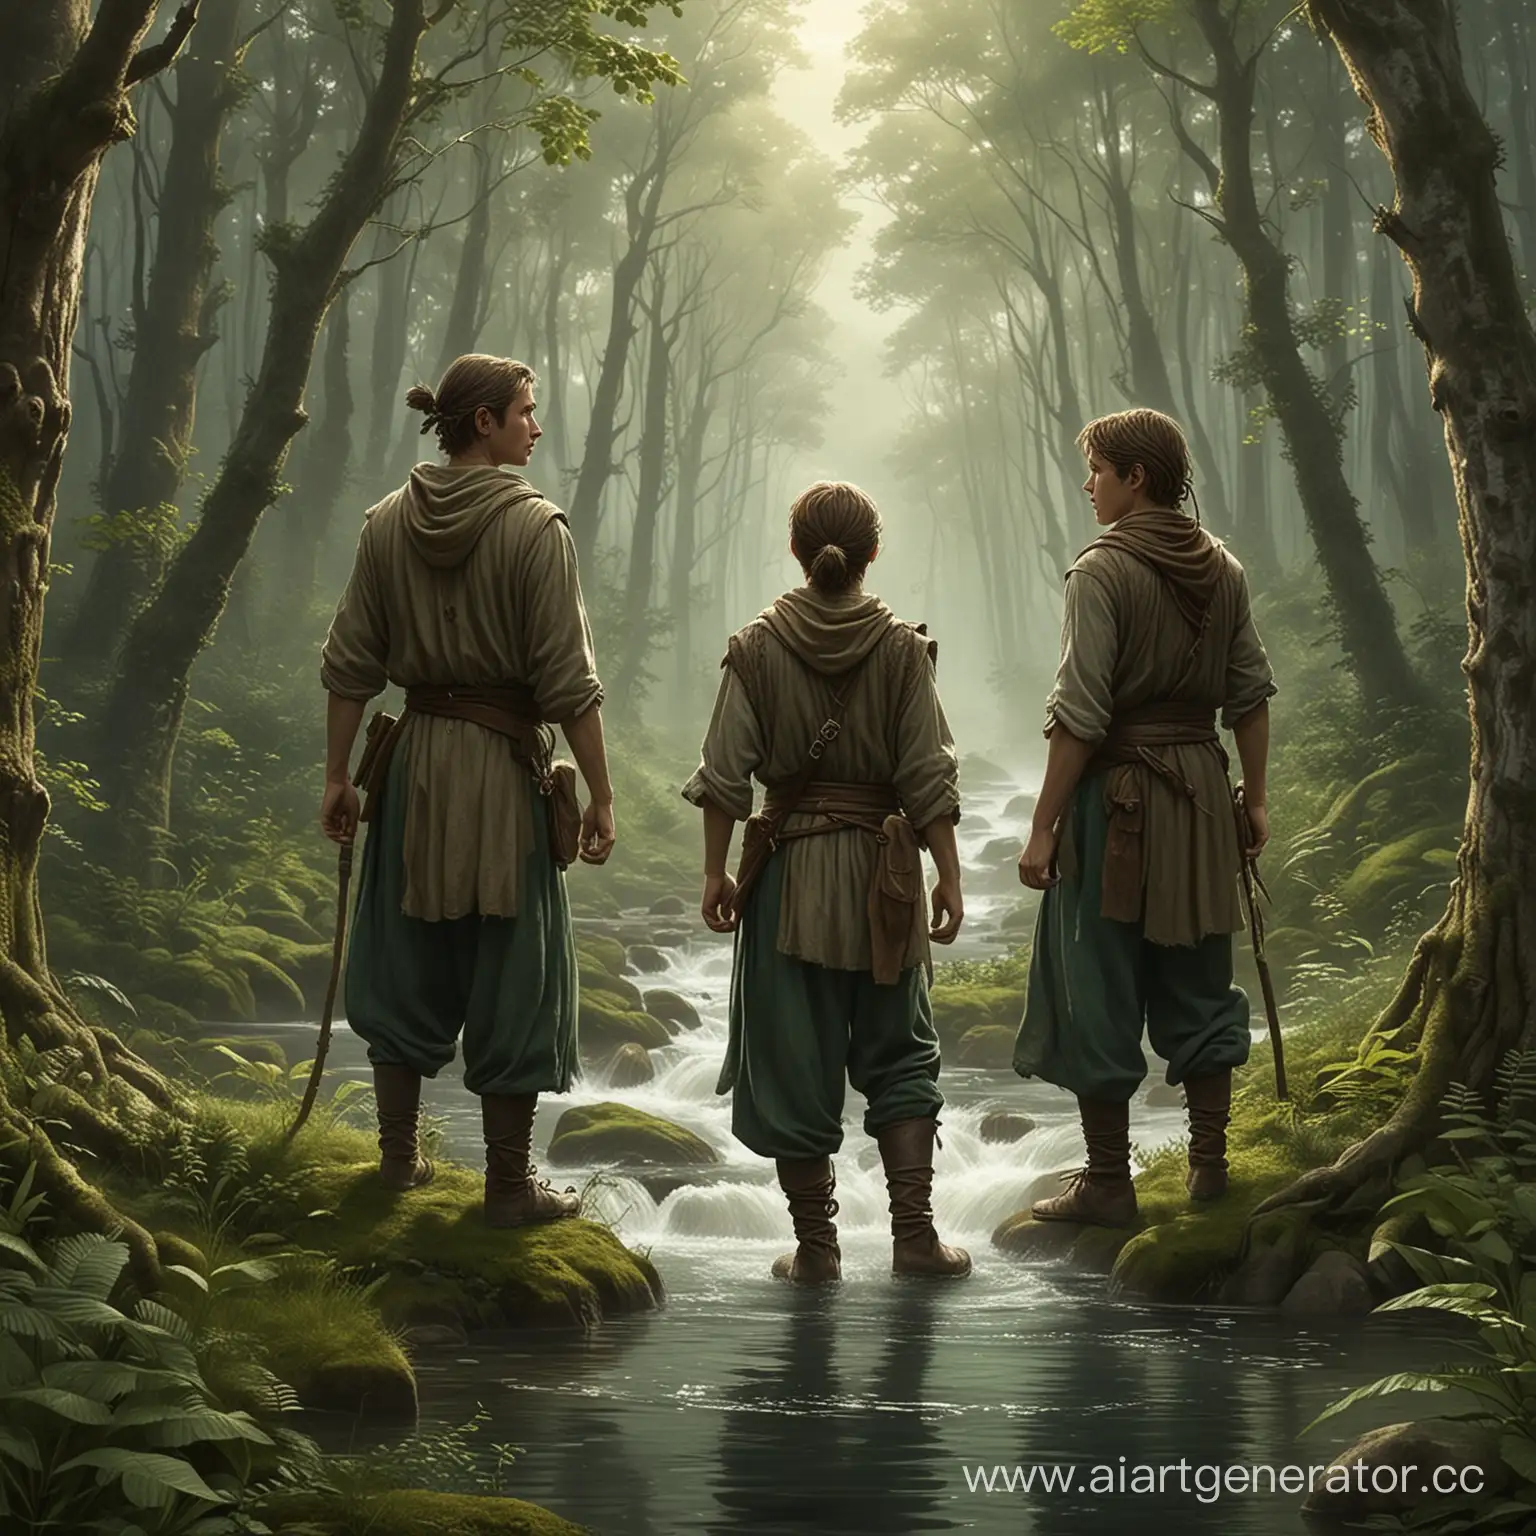 сказка: Жили-были в далеком лесу три брата - Ветер, Вода и Земля. Они были хранителями природы и заботились о том, чтобы лес был здоровым и чистым.